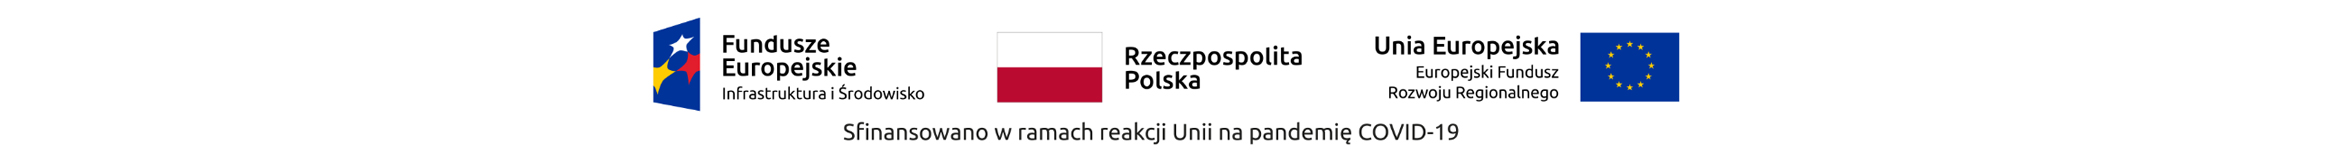 Wzmocnienie nadzoru sanitarno epidemiologicznego Polski